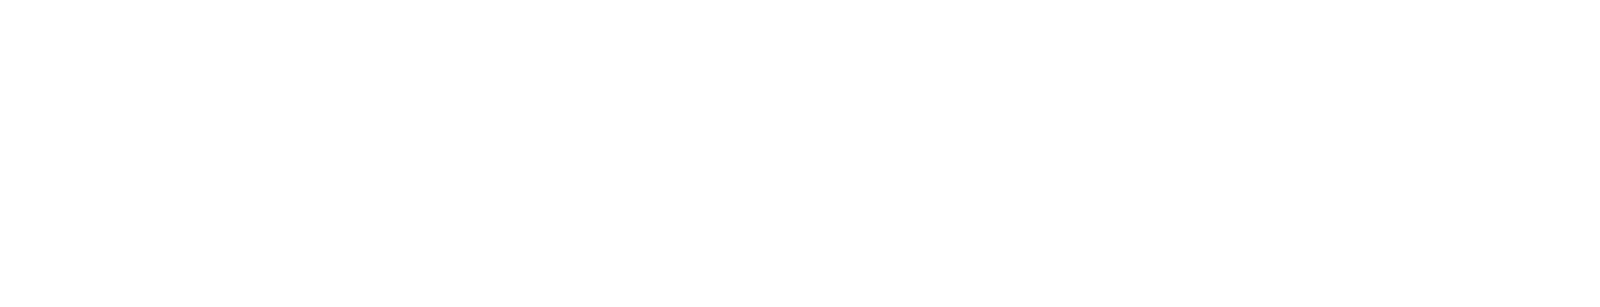 Neoen logo large for dark backgrounds (transparent PNG)